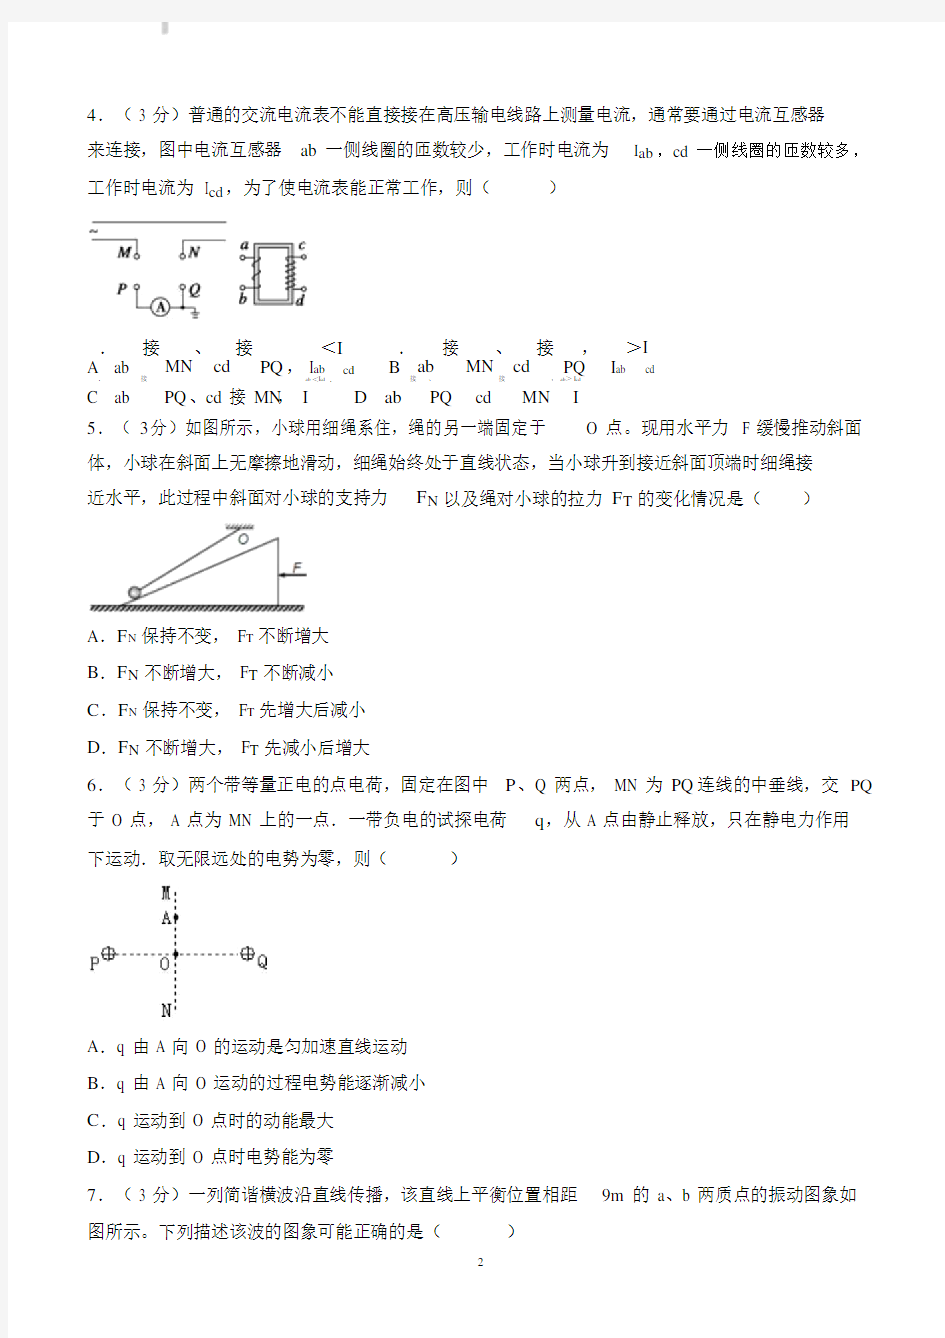 【高考真题】2013年天津市高考物理试卷(含答案).docx